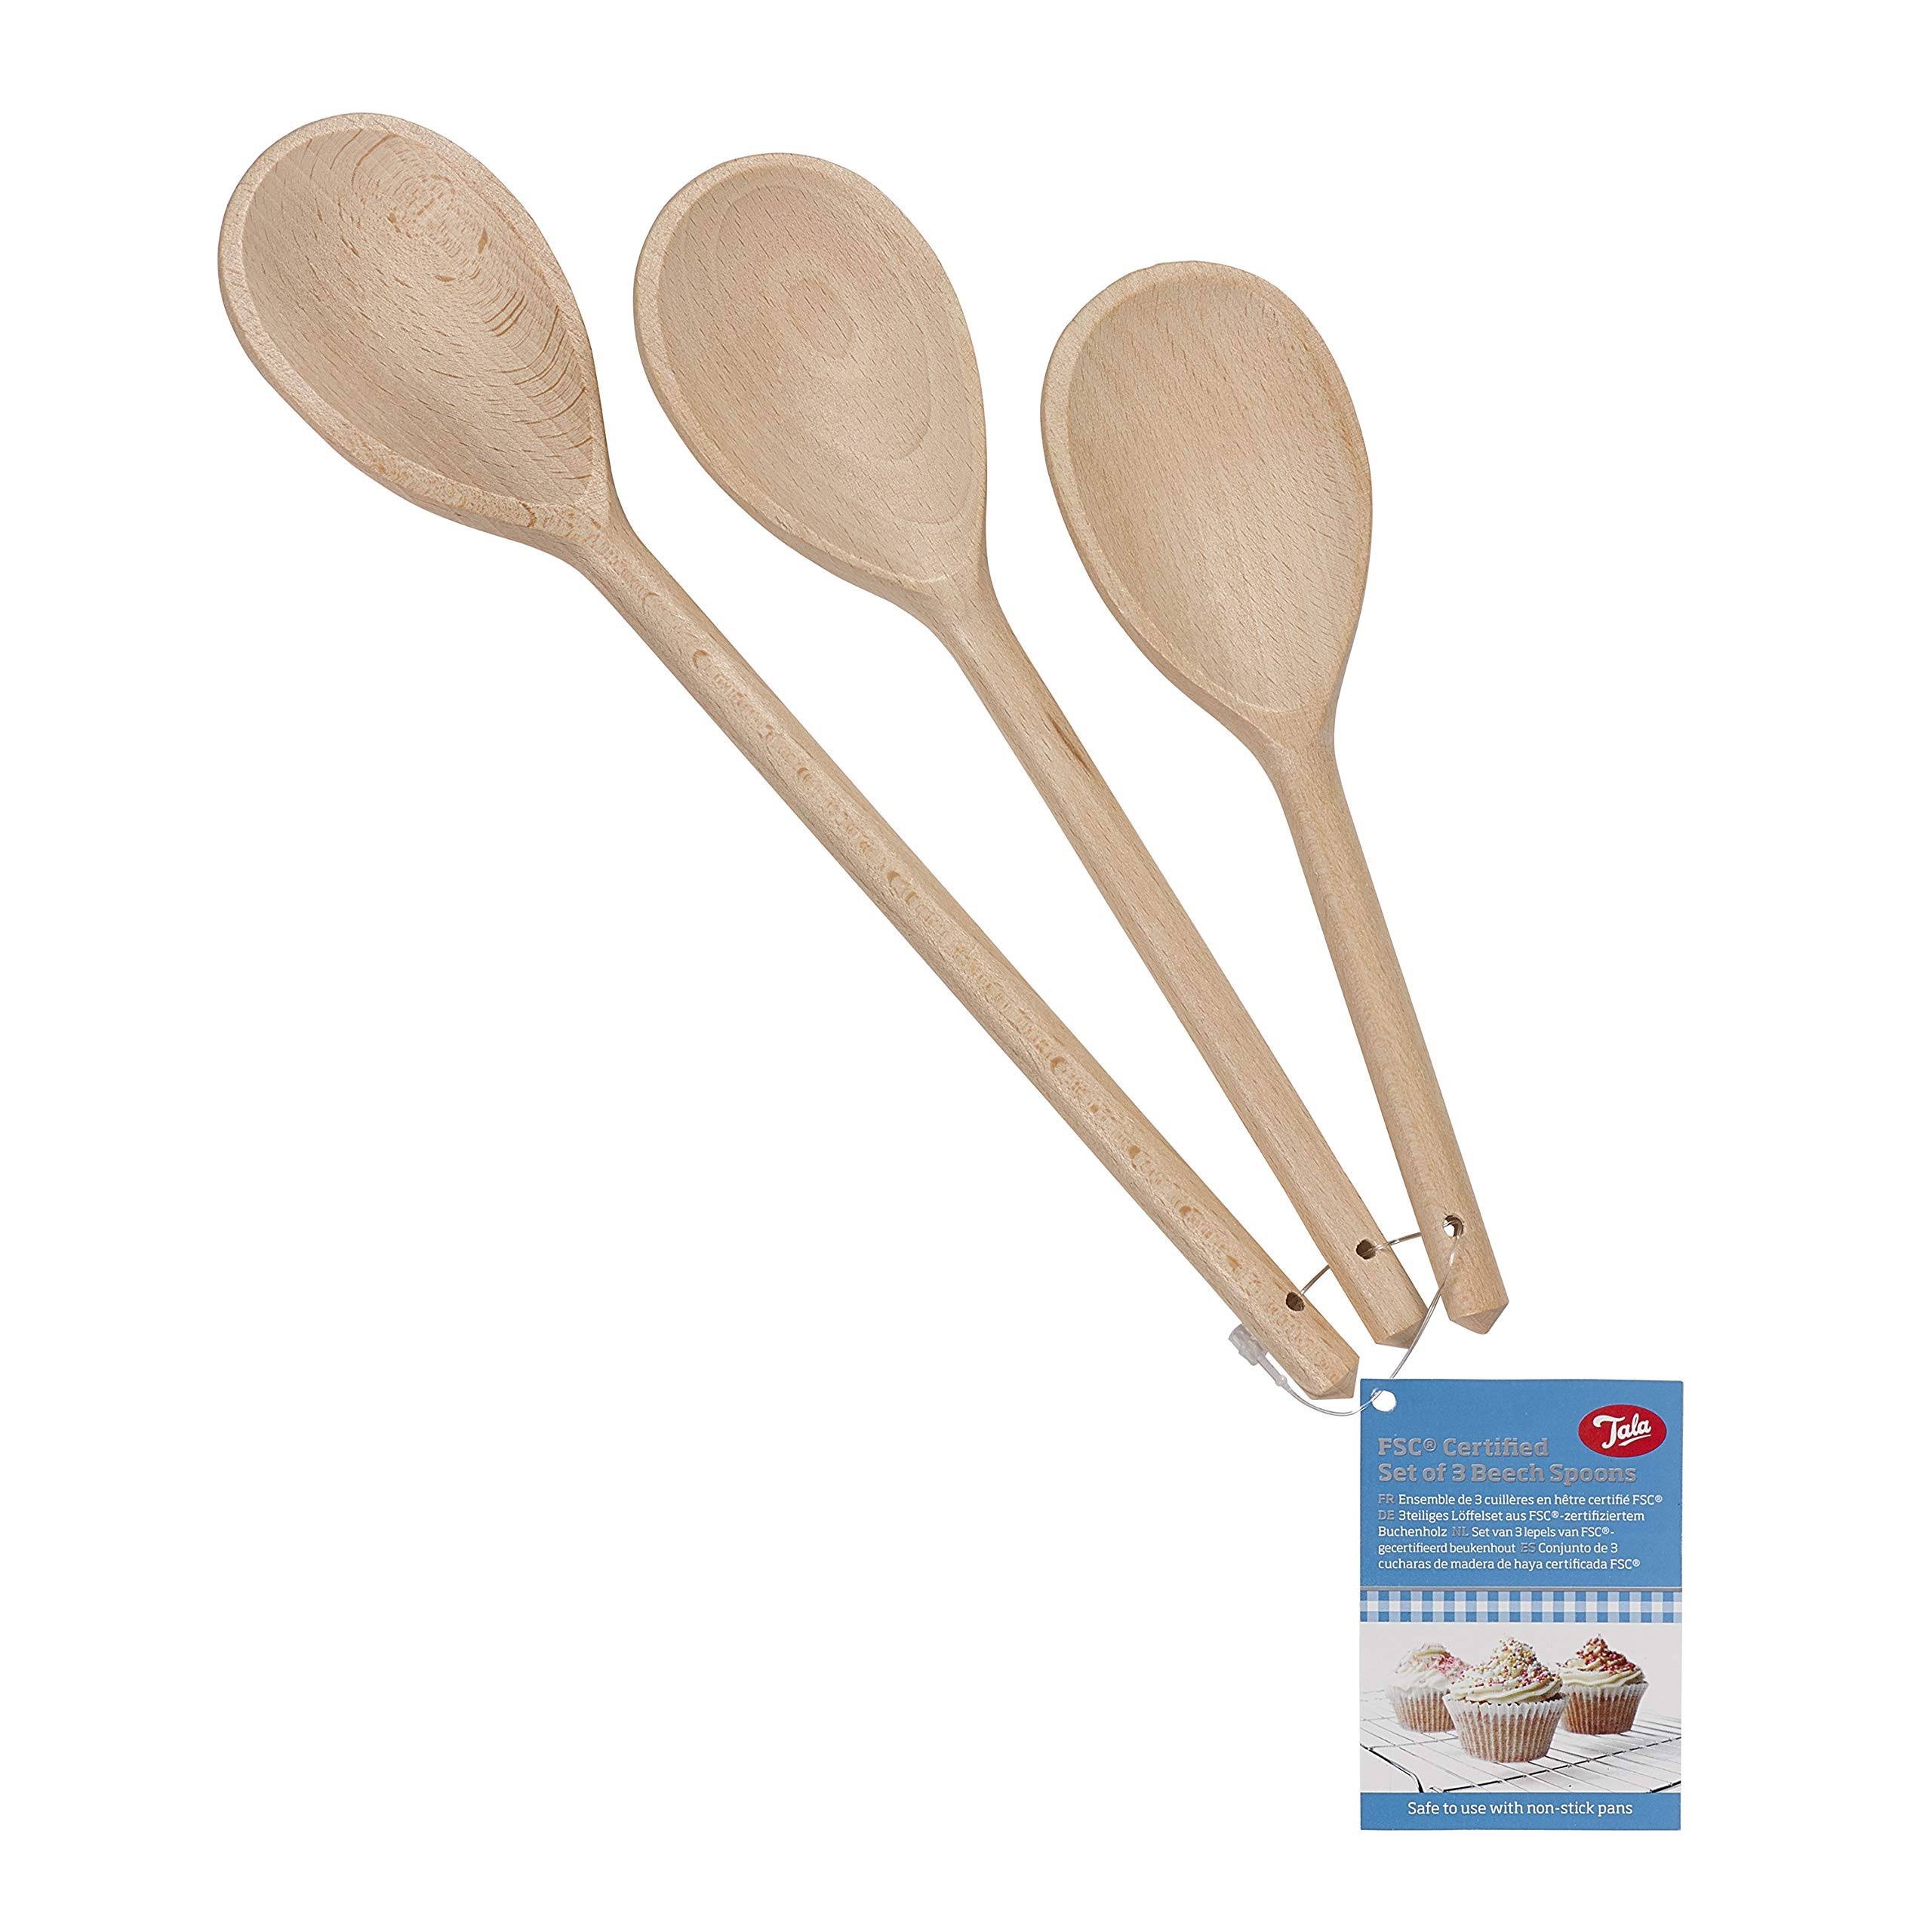 Tala Wooden Spoon Set - 3 Pcs